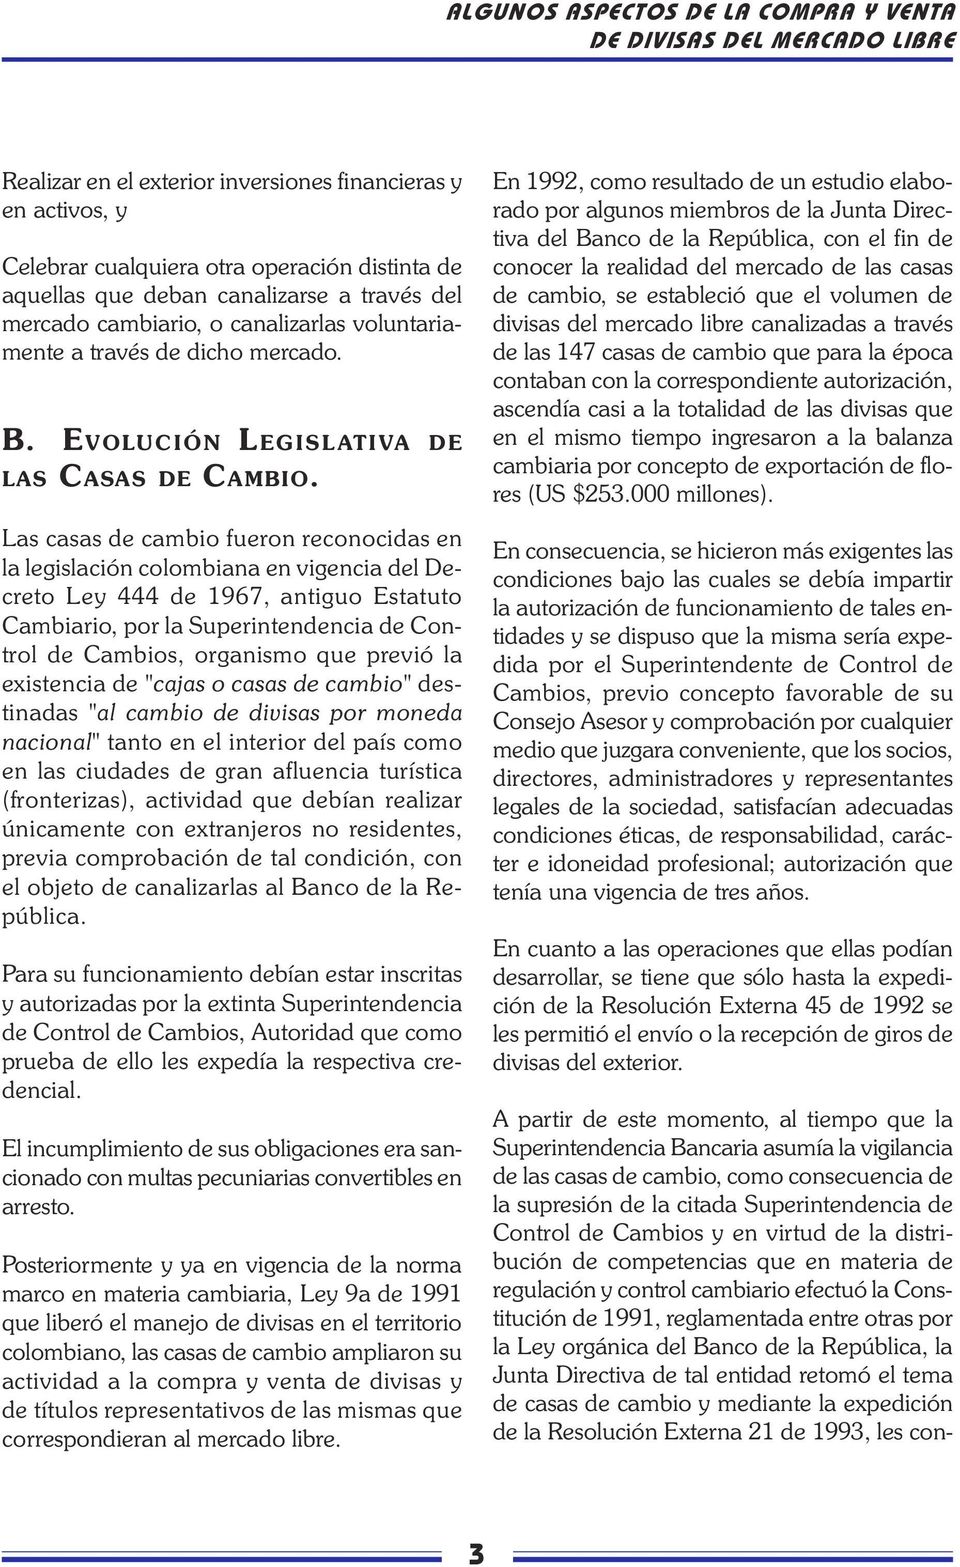 Las casas de cambio fueron reconocidas en la legislación colombiana en vigencia del Decreto Ley 444 de 1967, antiguo Estatuto Cambiario, por la Superintendencia de Control de Cambios, organismo que